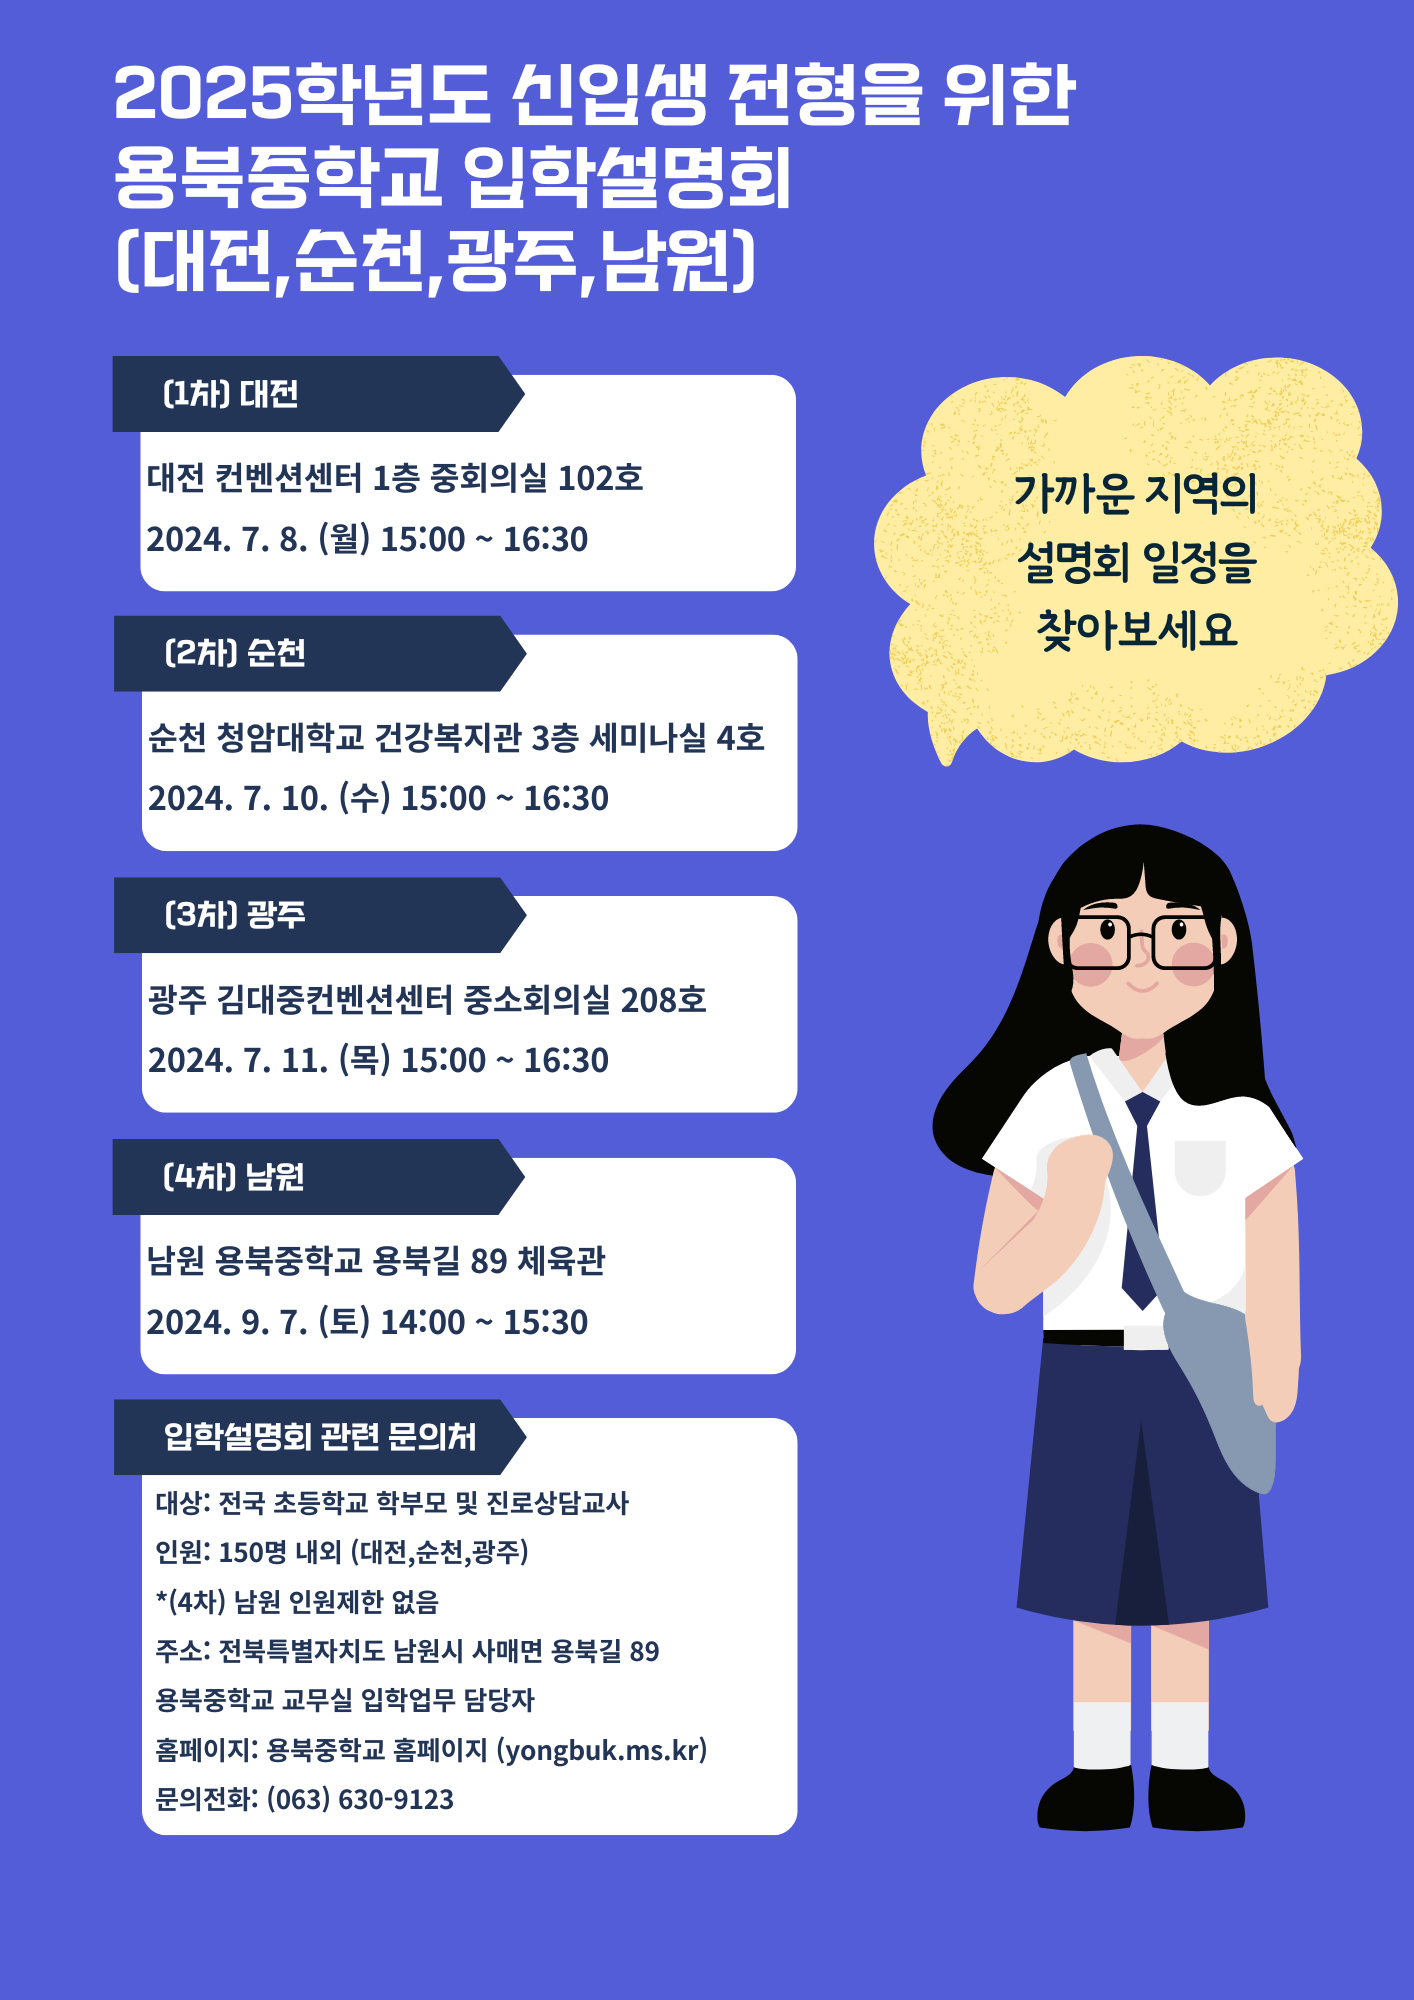 사본 -2025학년도 용북중학교 입학설명회 포스터